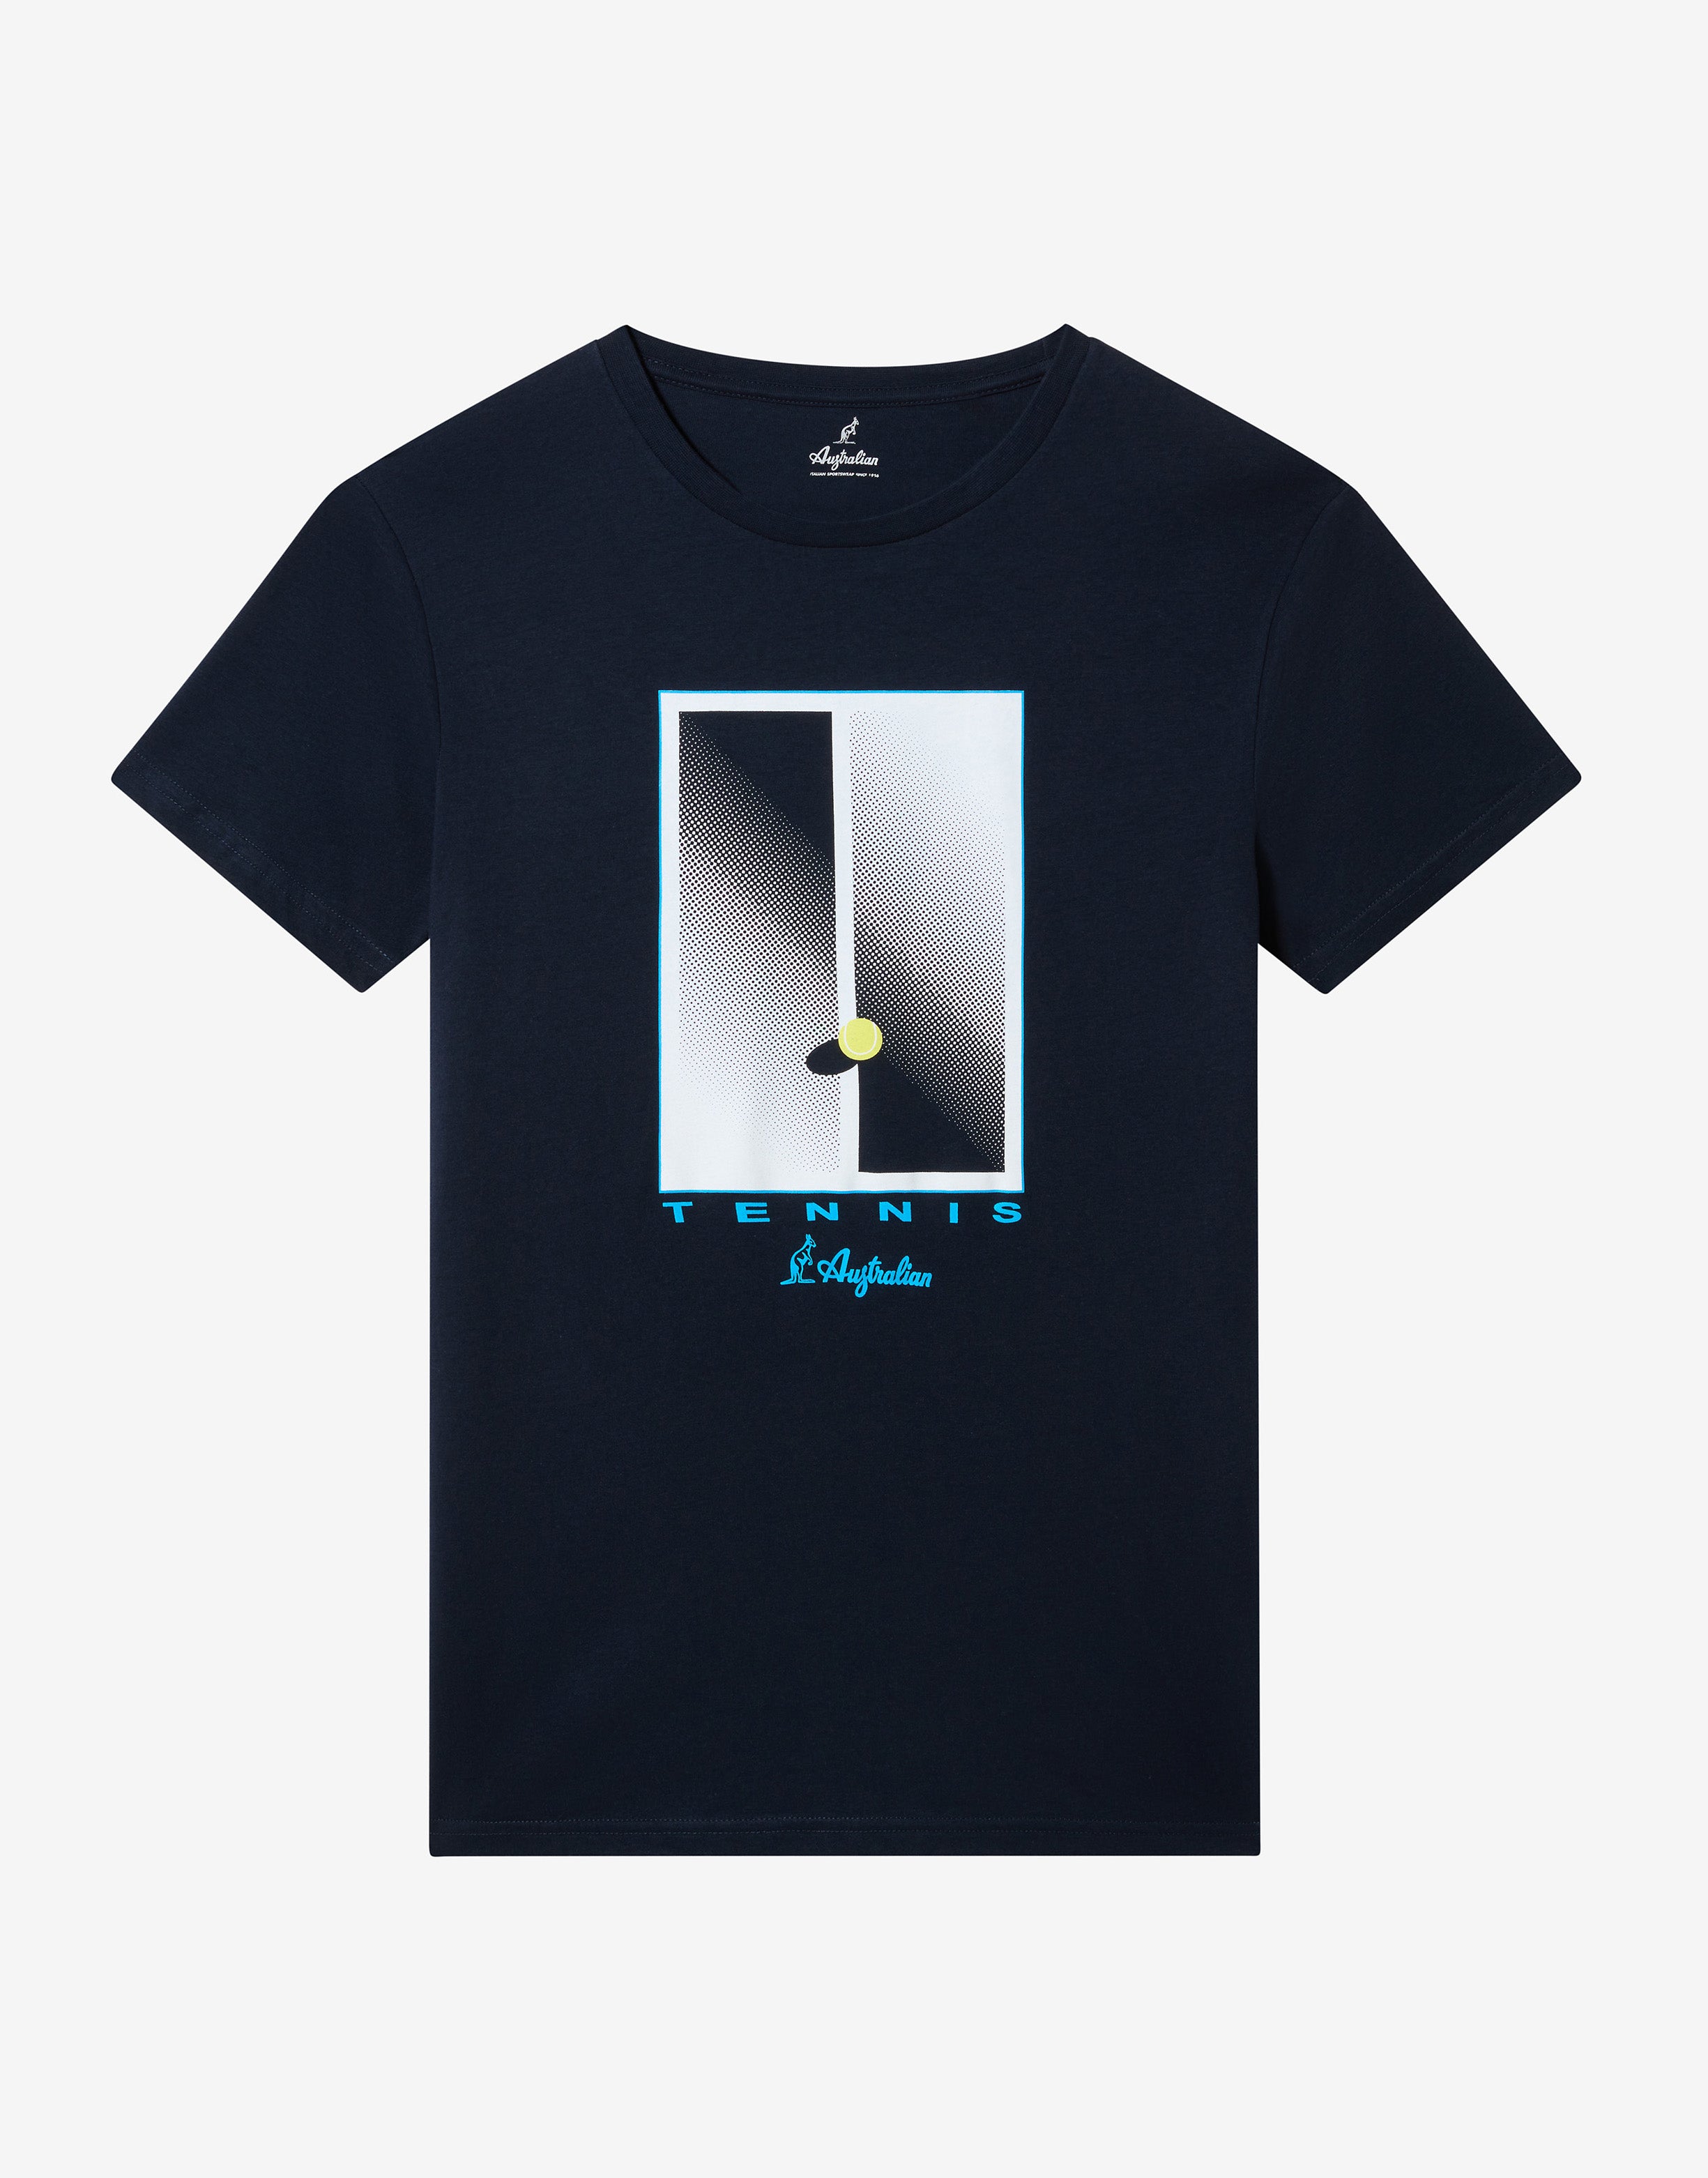 Abstract Court T-shirt: Australian Tennis